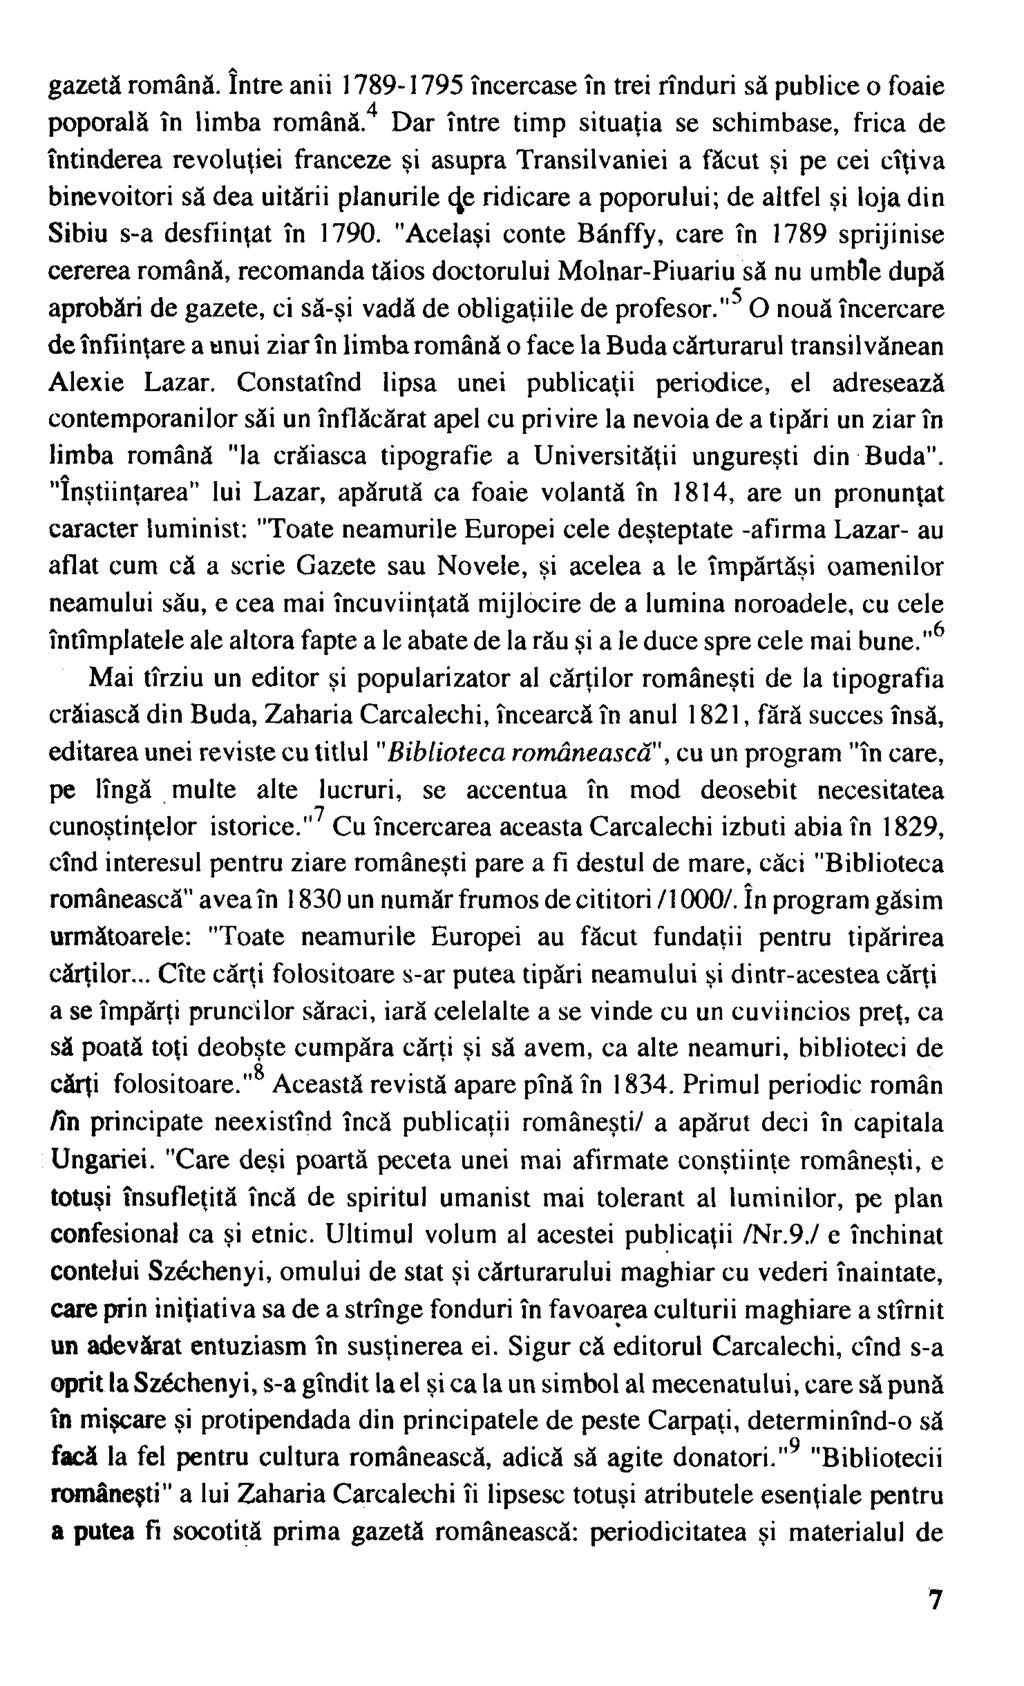 gazetă română. între anii 1789-1795 încercase în trei rînduri să publice o foaie poporală în limba română.